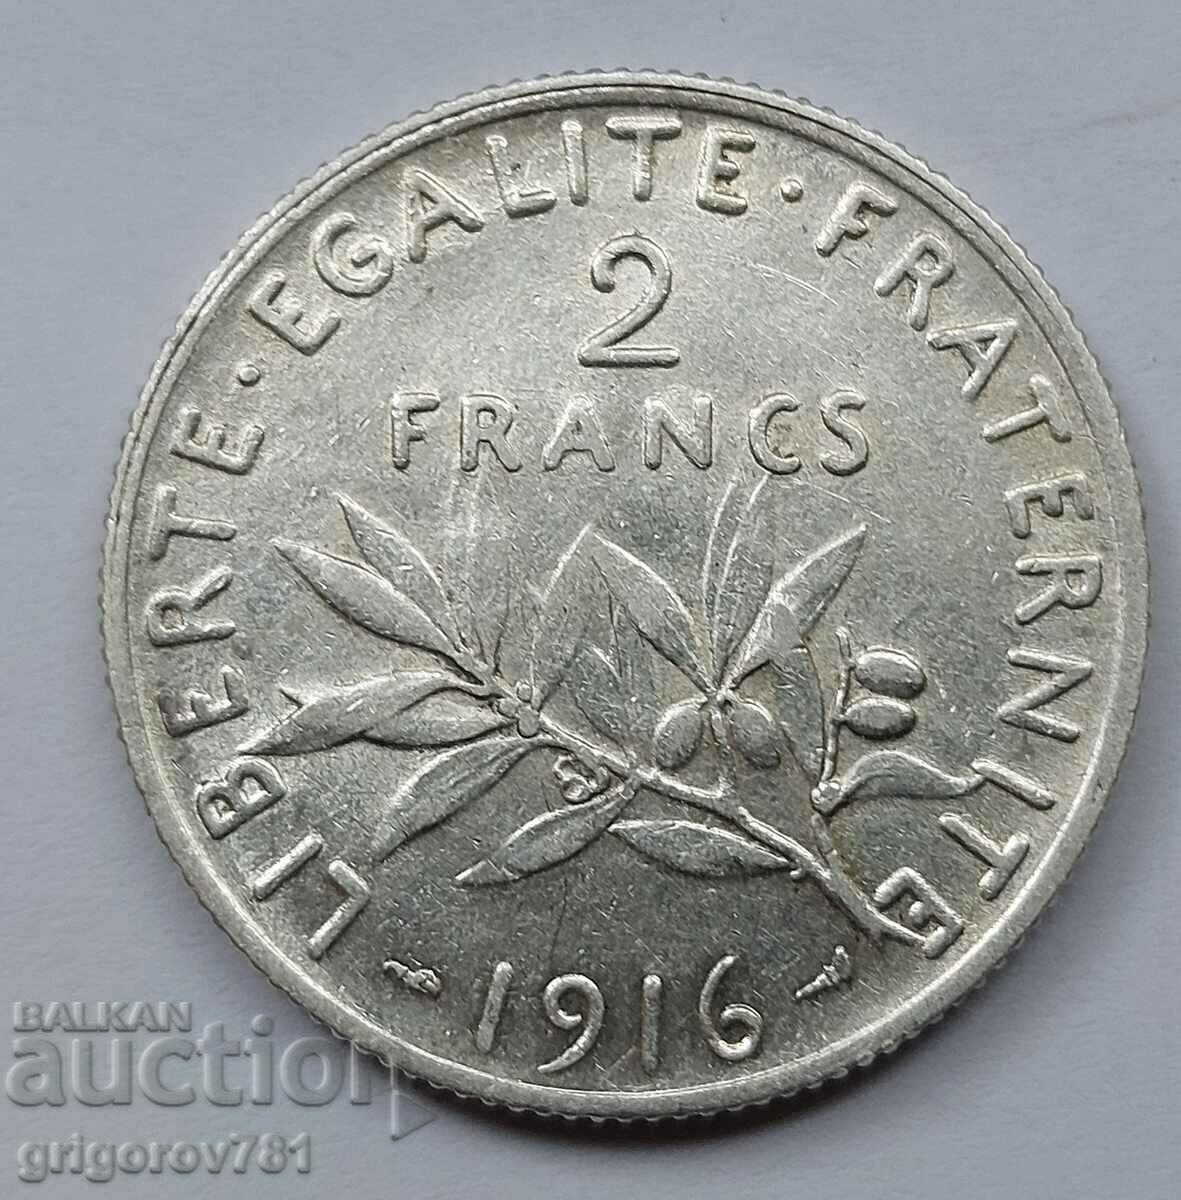 2 Franci Argint Franta 1916 - Moneda de argint #125